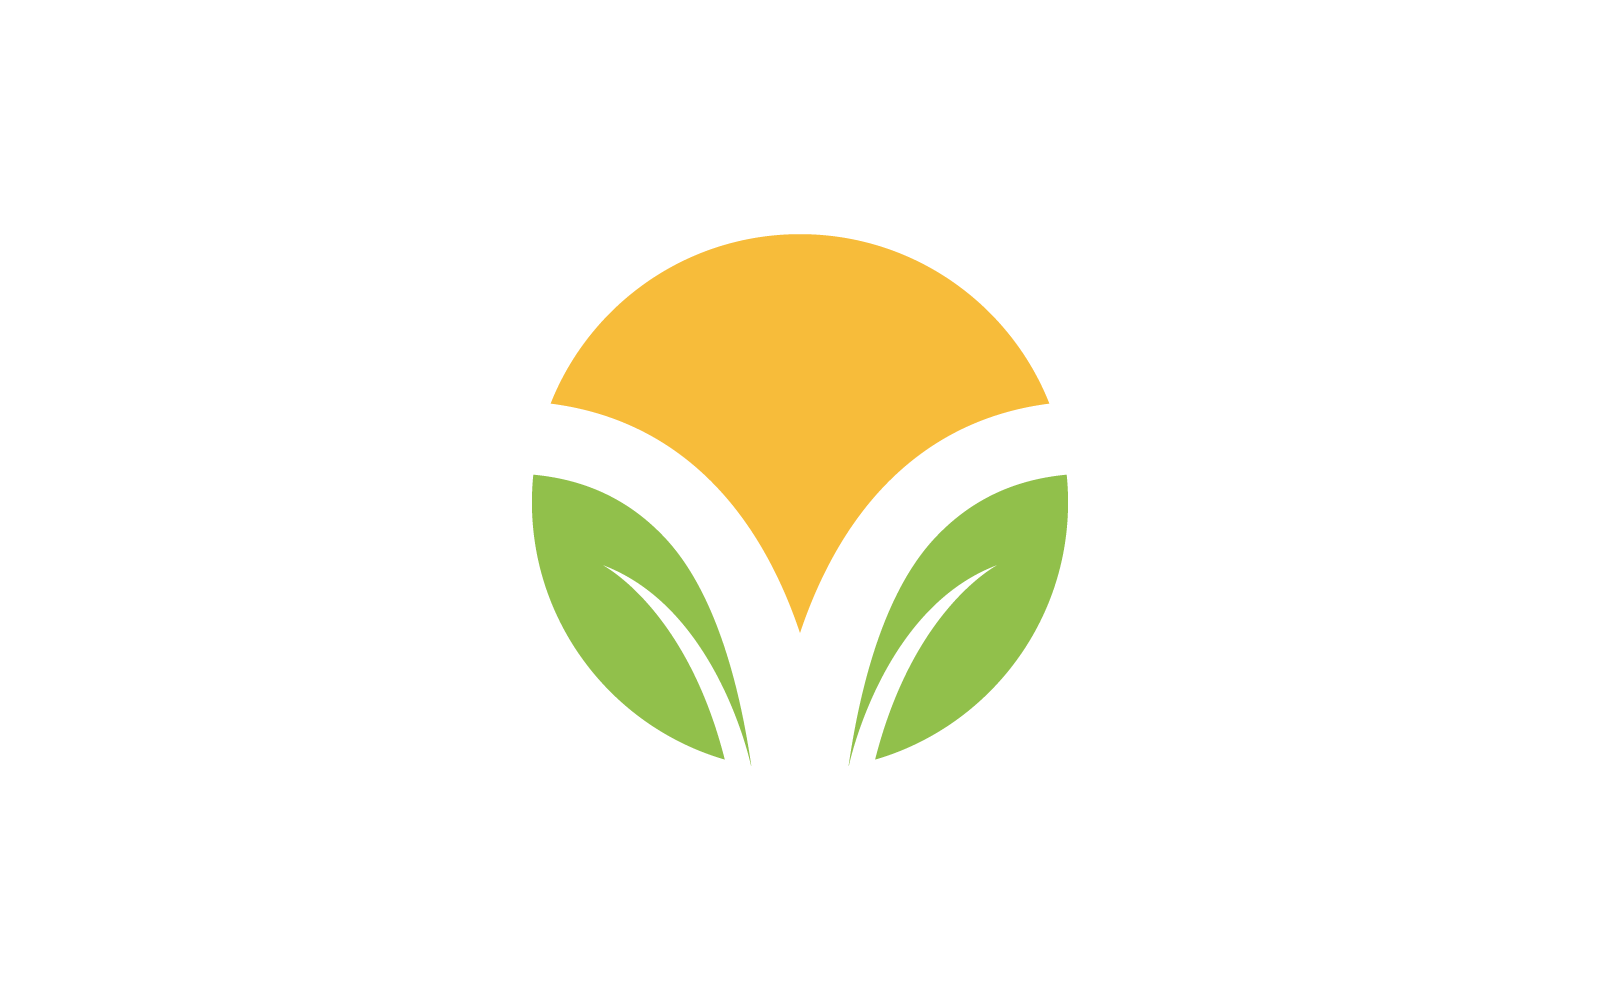 Green leaf illustration nature logo vector